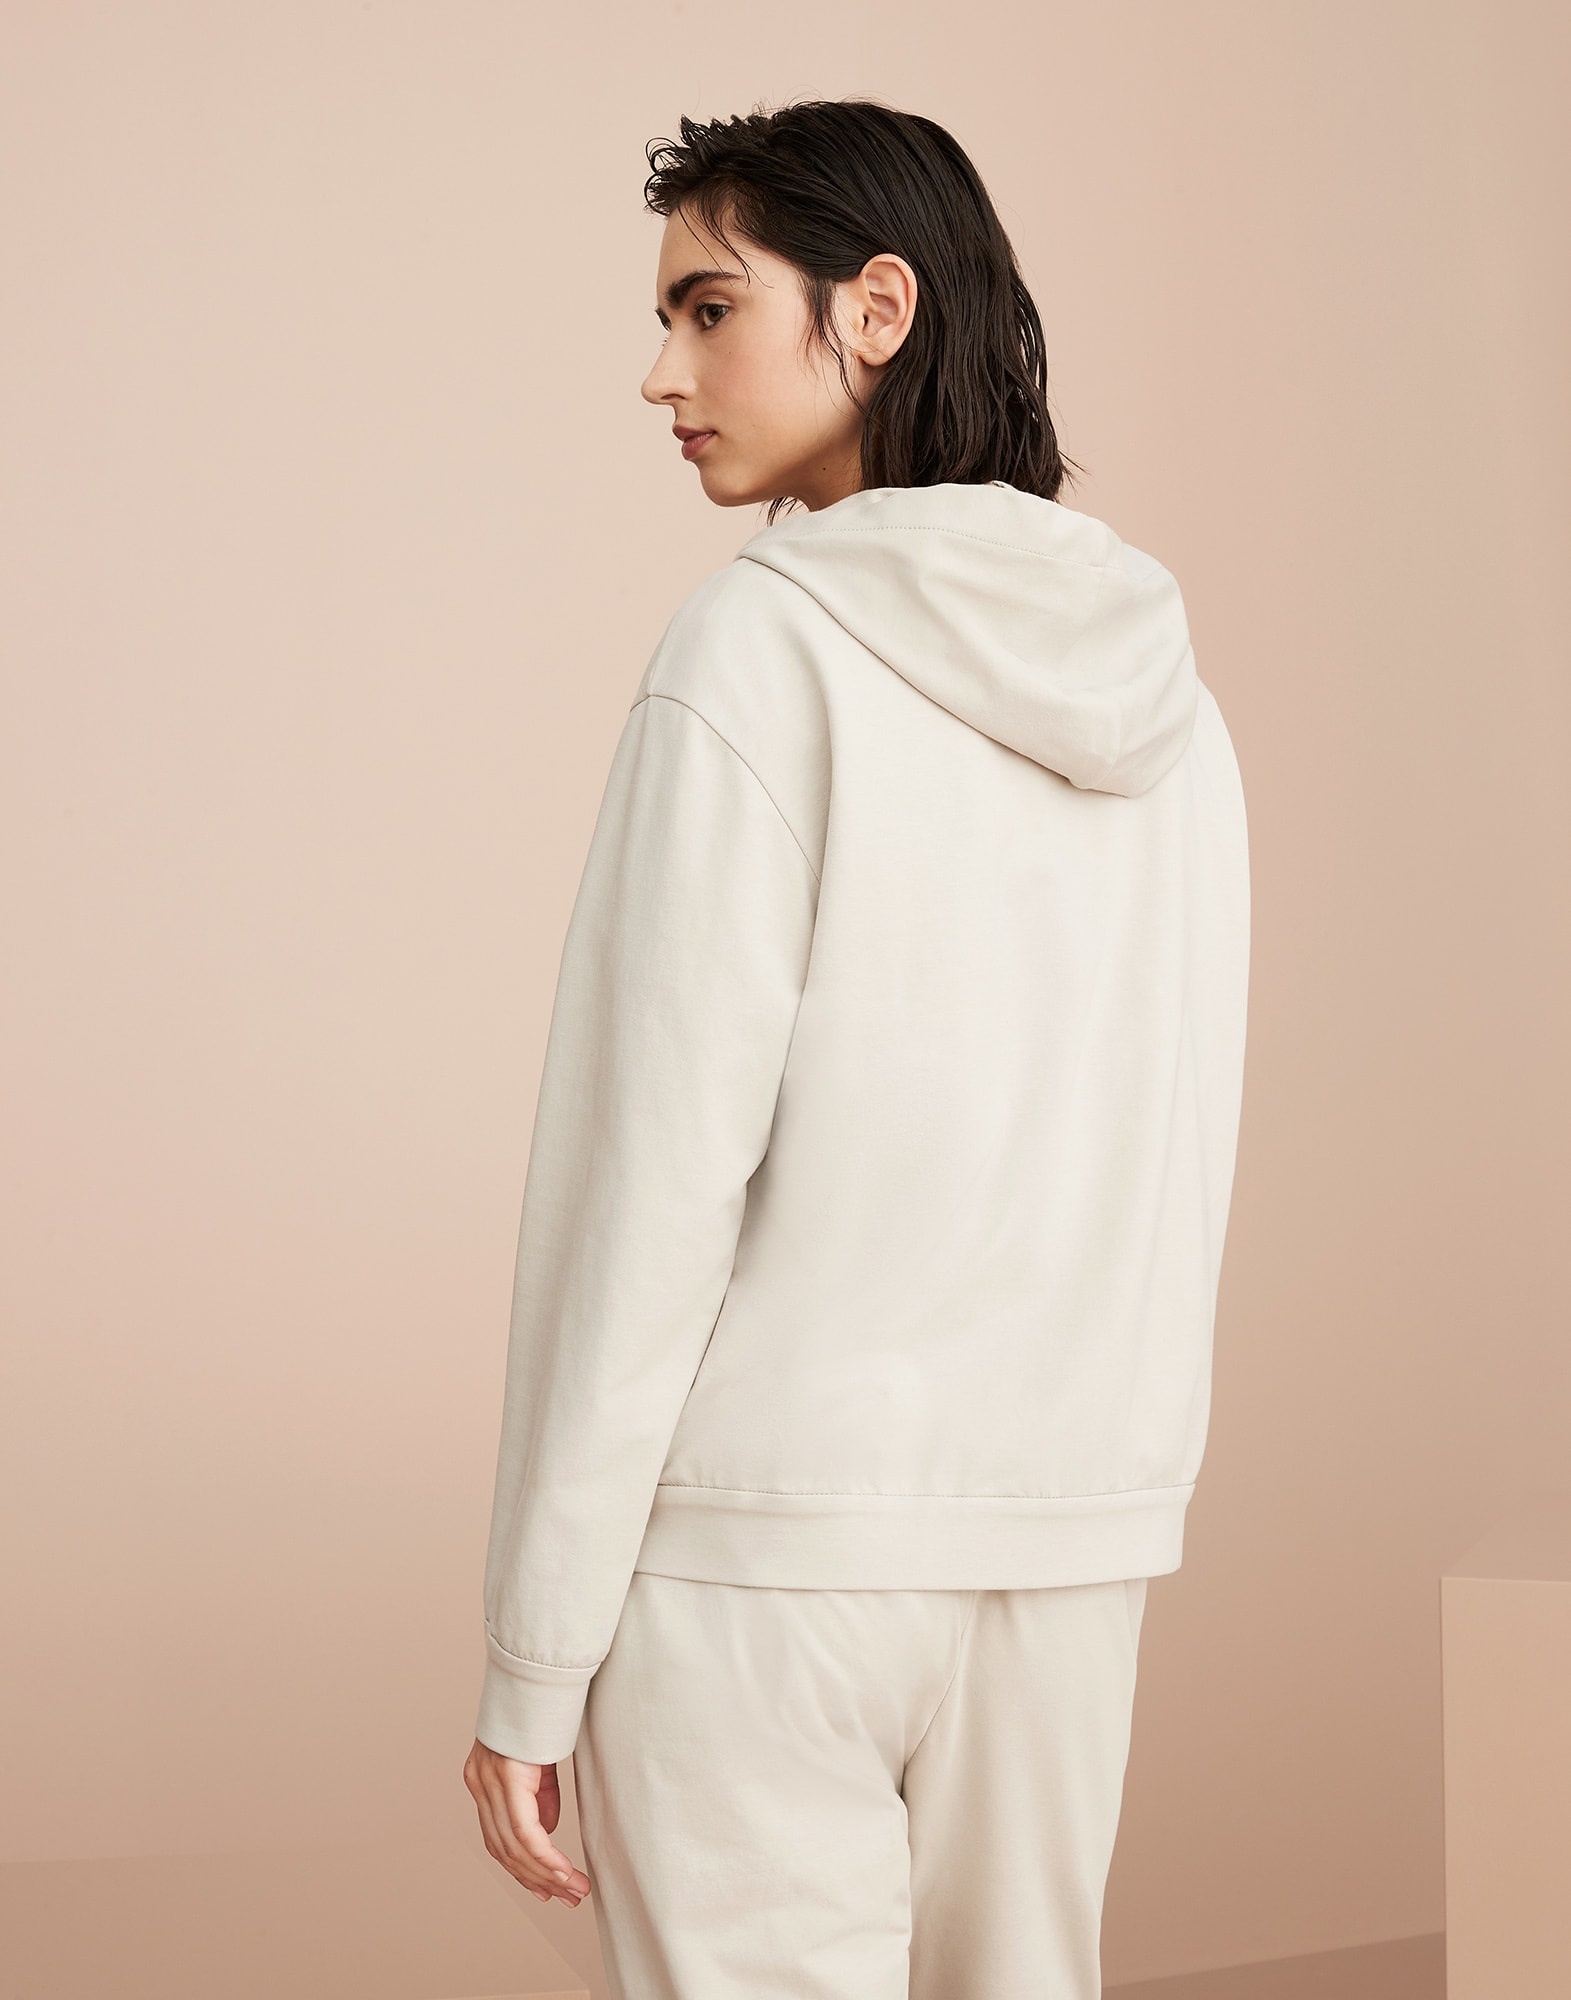 Lightweight stretch cotton sweatshirt with precious detail - 2